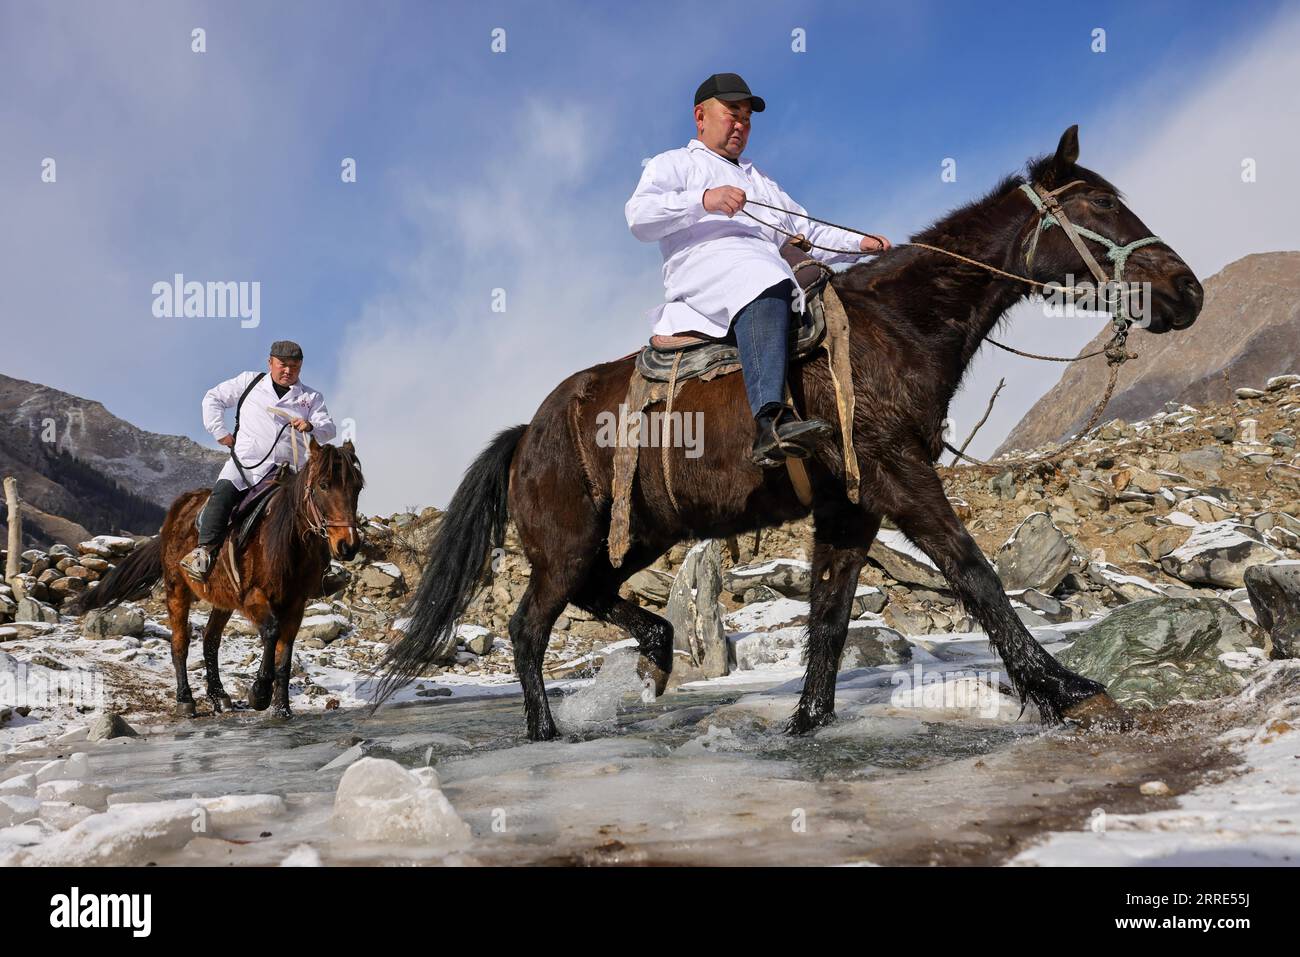 220128 -- URUMQI, 28 gennaio 2022 -- i veterinari fanno un giro di visite nella valle di Akyaz nella contea di Zhaosu, prefettura autonoma di Kazak di Ili, regione autonoma di Xinjiang Uygur della Cina nord-occidentale, 25 gennaio 2022. La valle di Akyaz è un importante pascolo invernale per i pastori di Zhaosu. Ogni anno, i pastori migravano lungo il fiume Akyaz, guidando con loro oltre 500.000 bovini per stabilirsi nella valle per l'inverno. Con un'altitudine media di 3.000 metri, la valle di Akyaz ha abbondante erba, acqua e un clima più caldo, grazie alle montagne circostanti che bloccano i venti freddi. Negli ultimi anni, Foto Stock